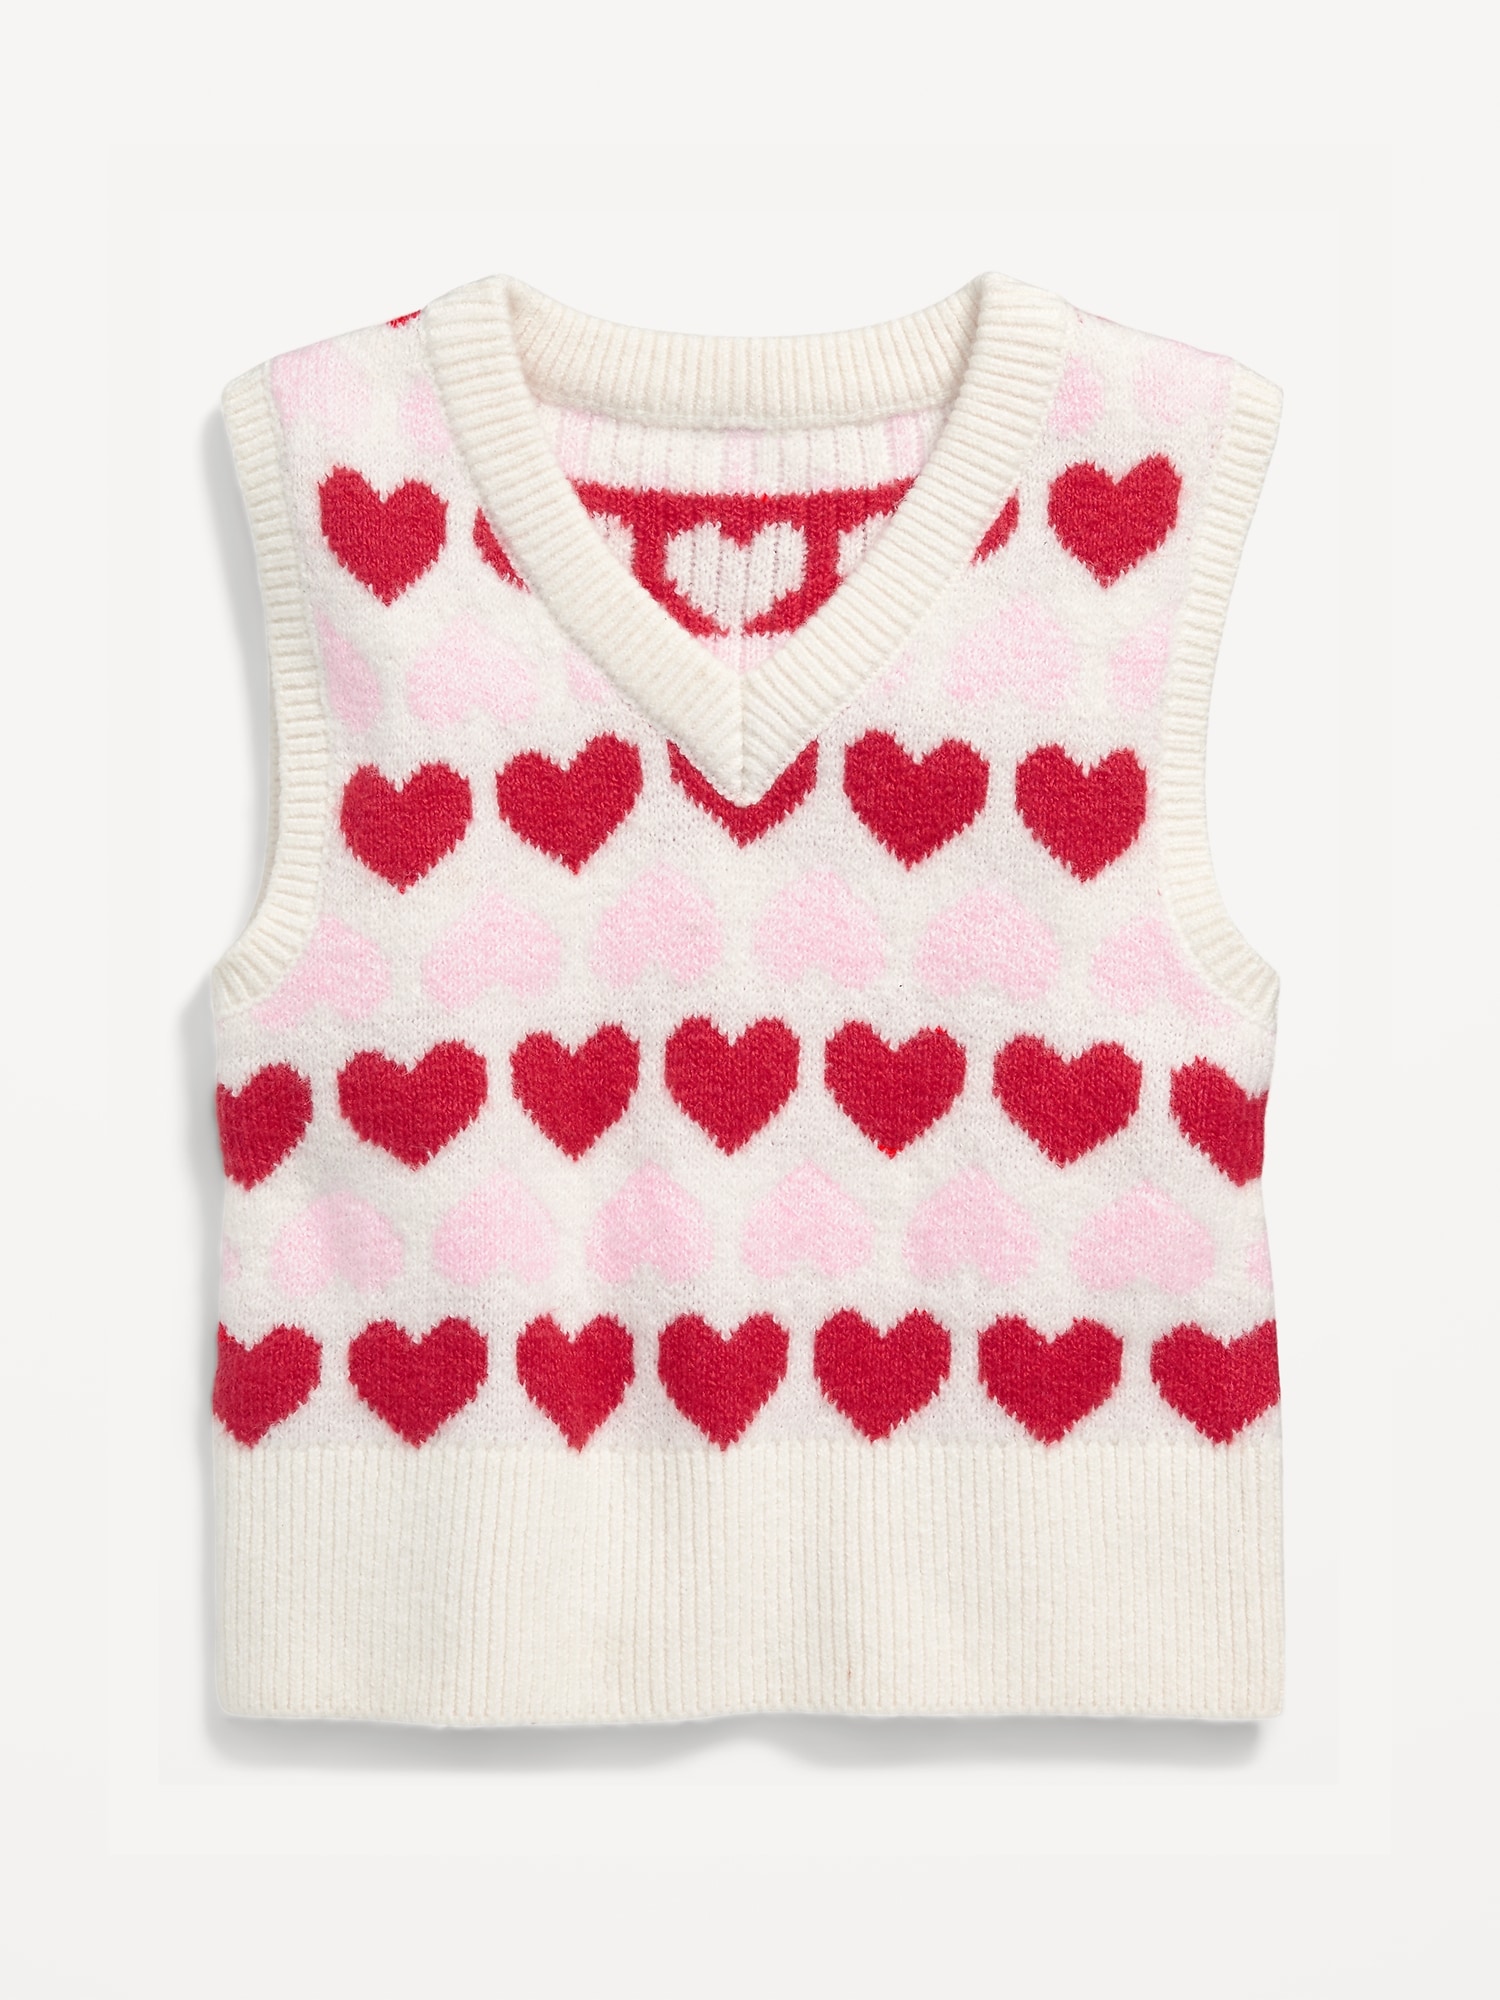 Old Navy Kids' Heart-Print Jacquard Sweater Vest - - Size XS